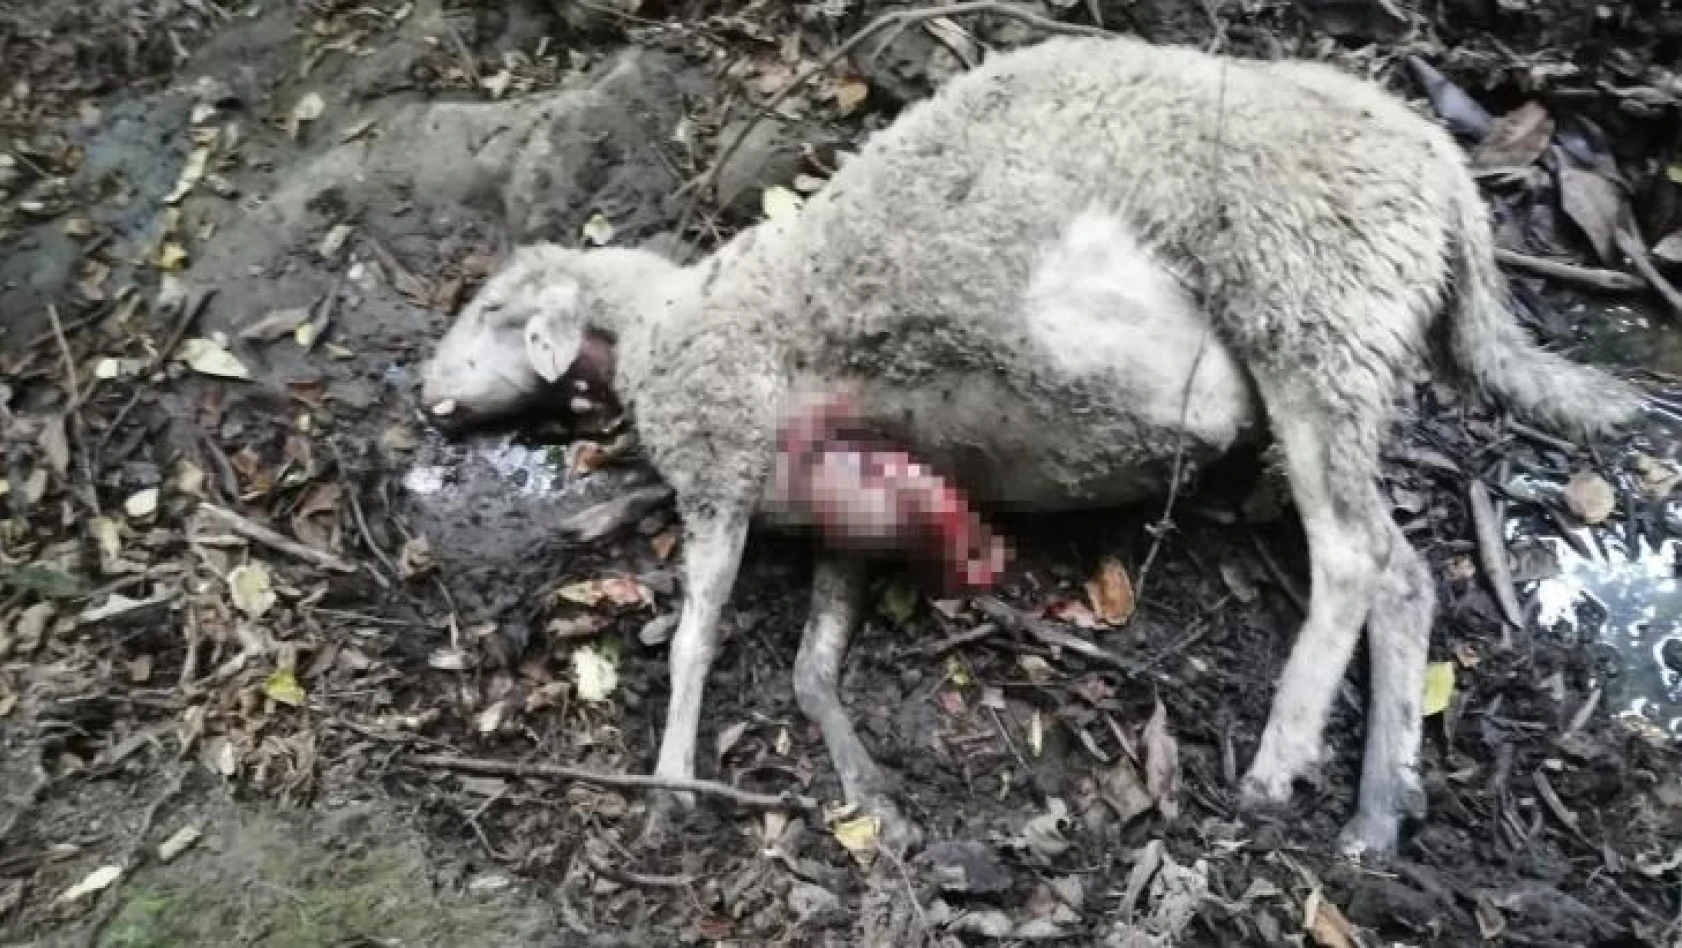 Kurtlar sürüye saldırdı, 9 koyun telef oldu